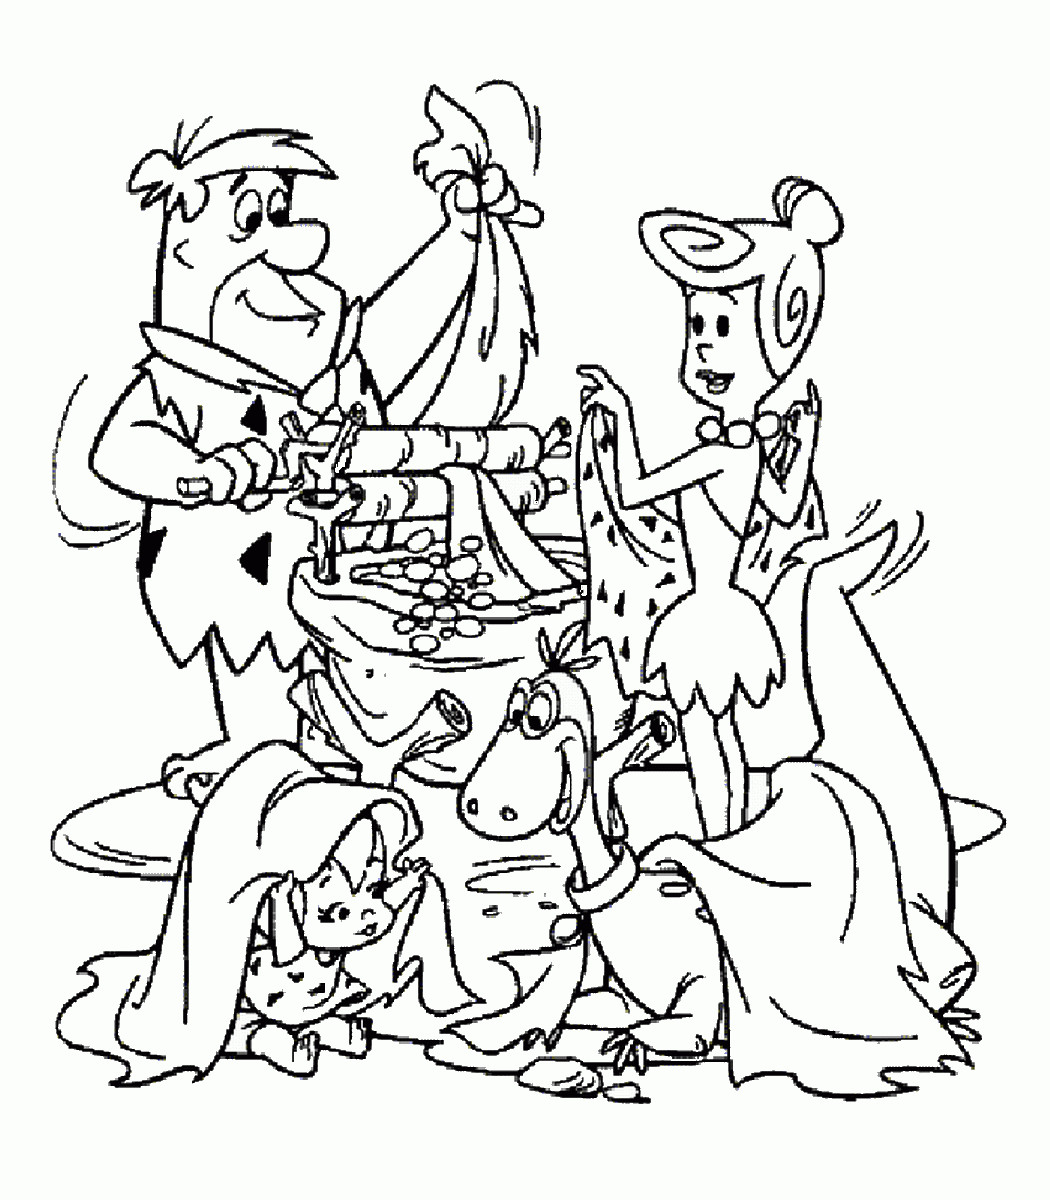 Best ideas about Flintstones Coloring Pages
. Save or Pin The Flintstones Coloring Pages Now.